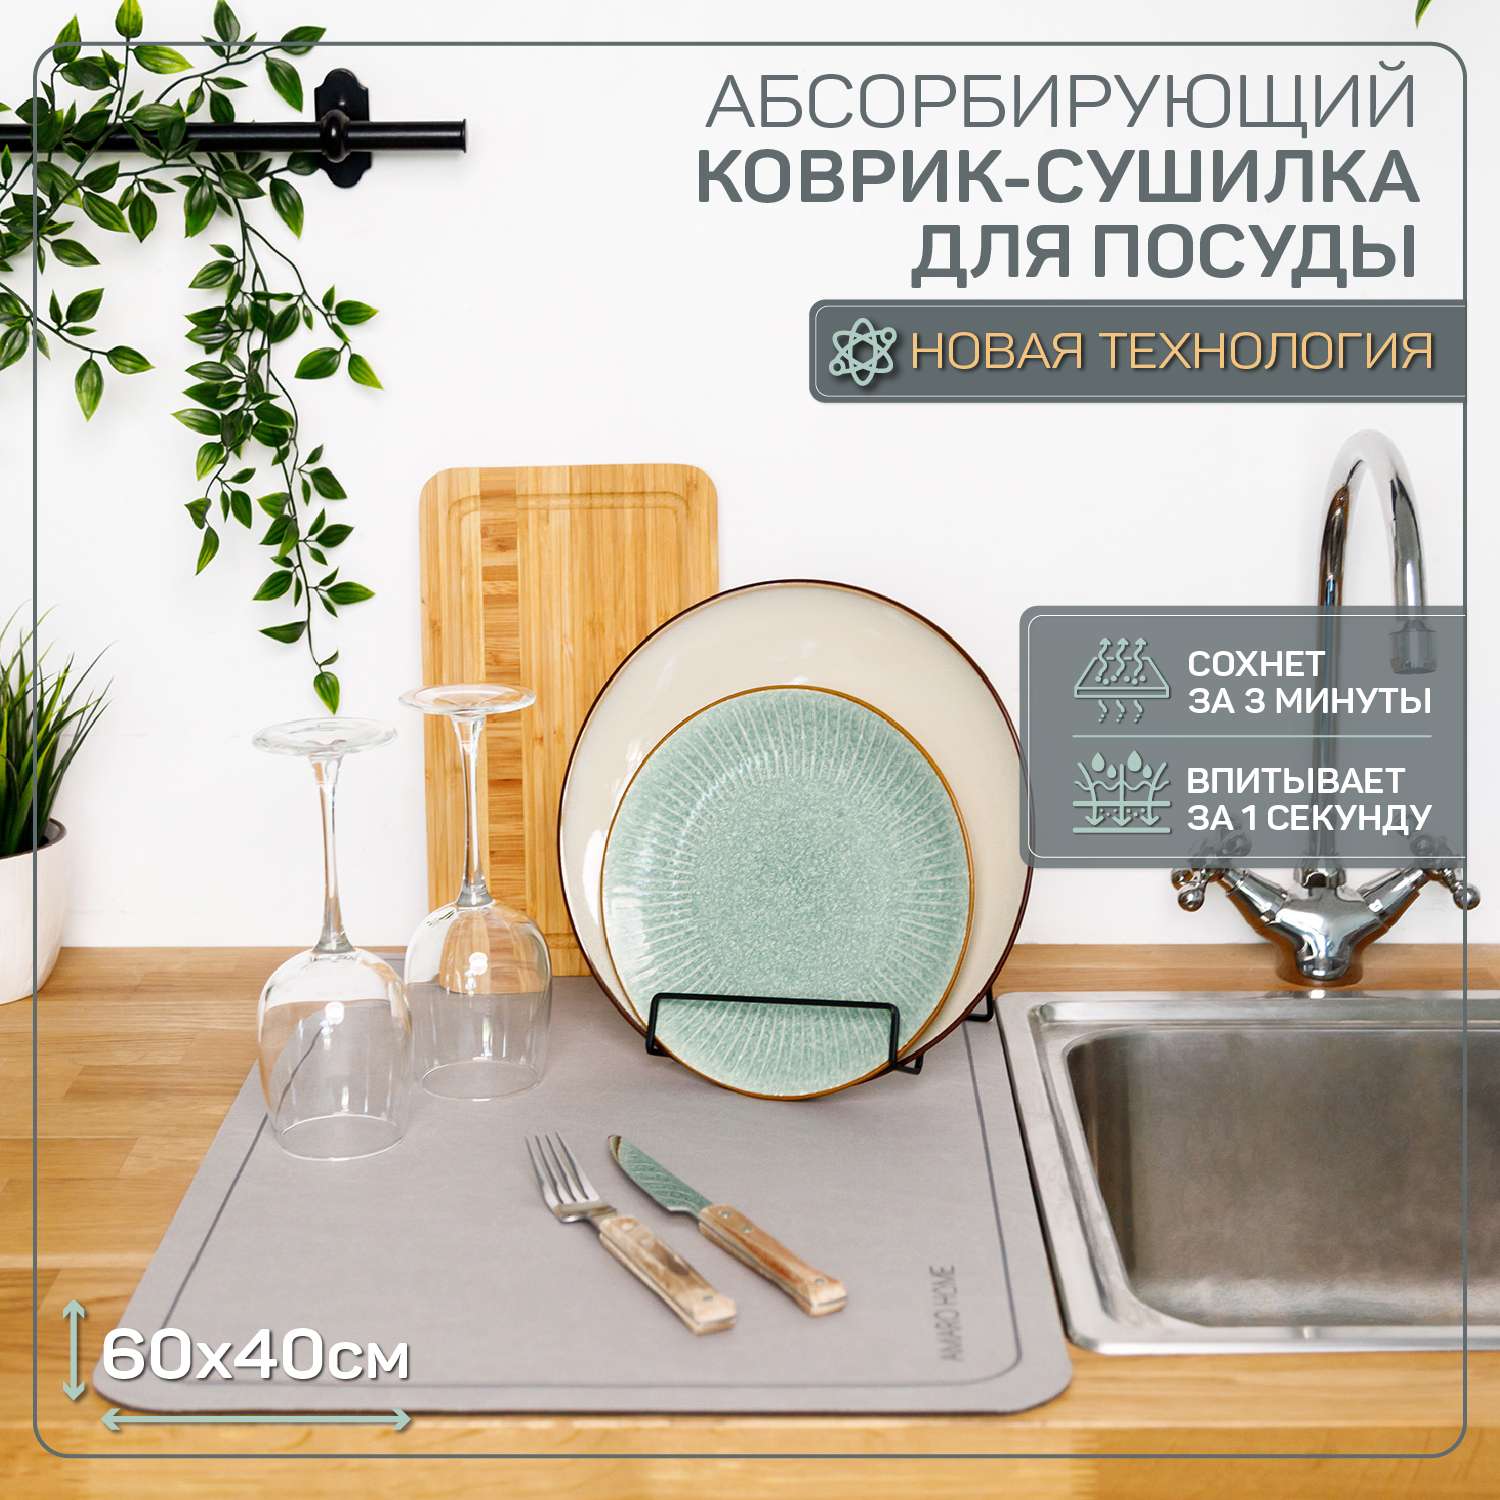 Коврик для посуды AMARO HOME с абсорбирующим эффектом серый 40х60 см - фото 2